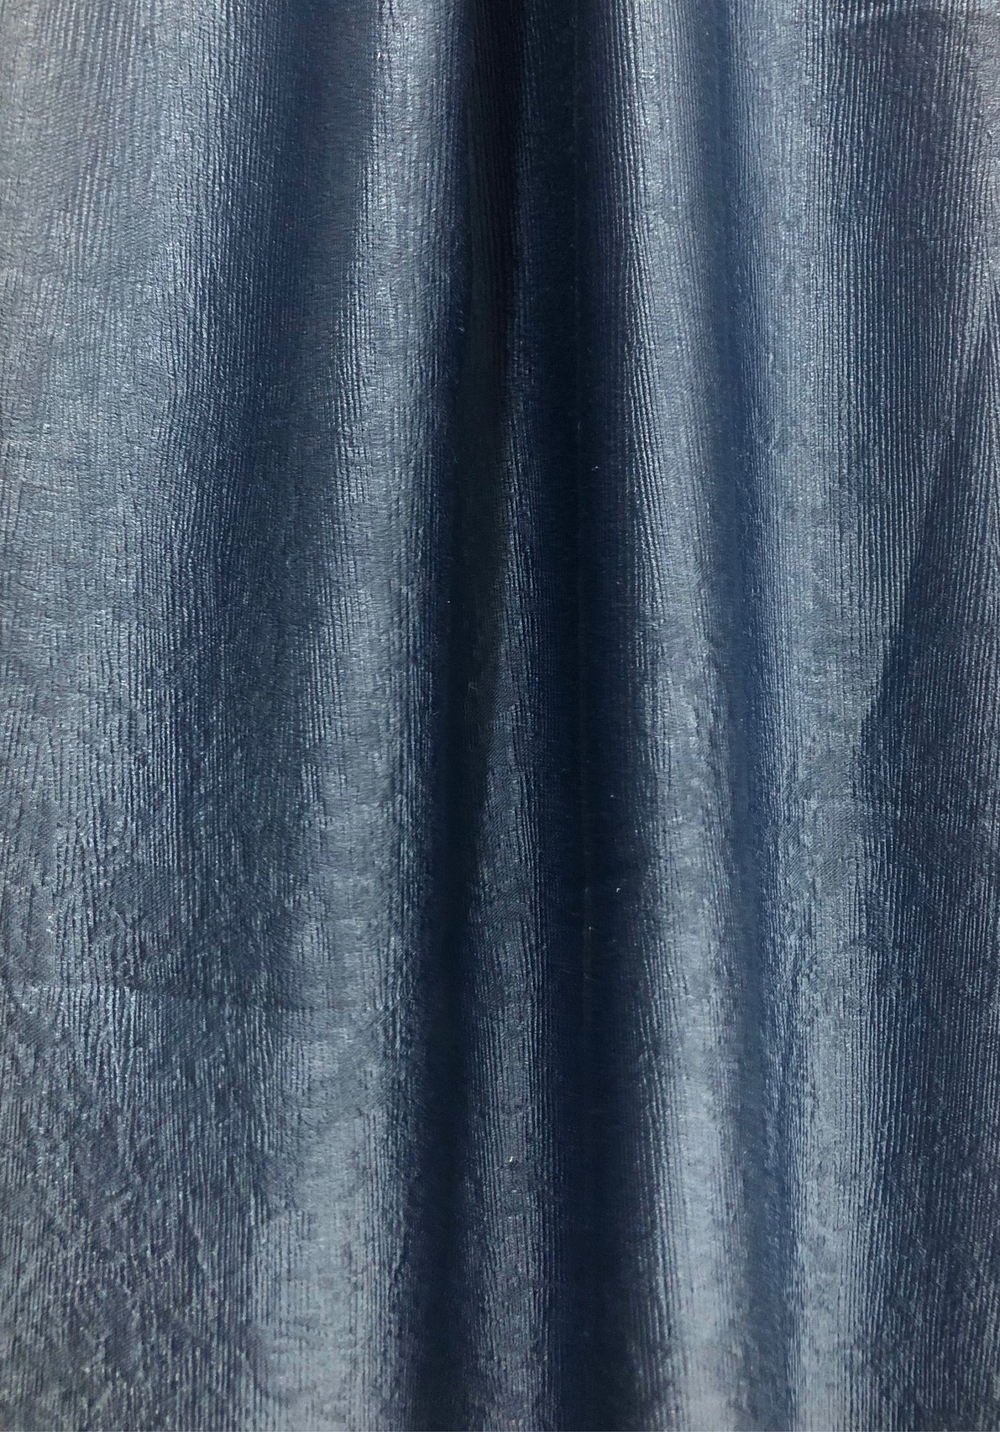 Ткань портьерная Софт, цвет синий, артикул 327373